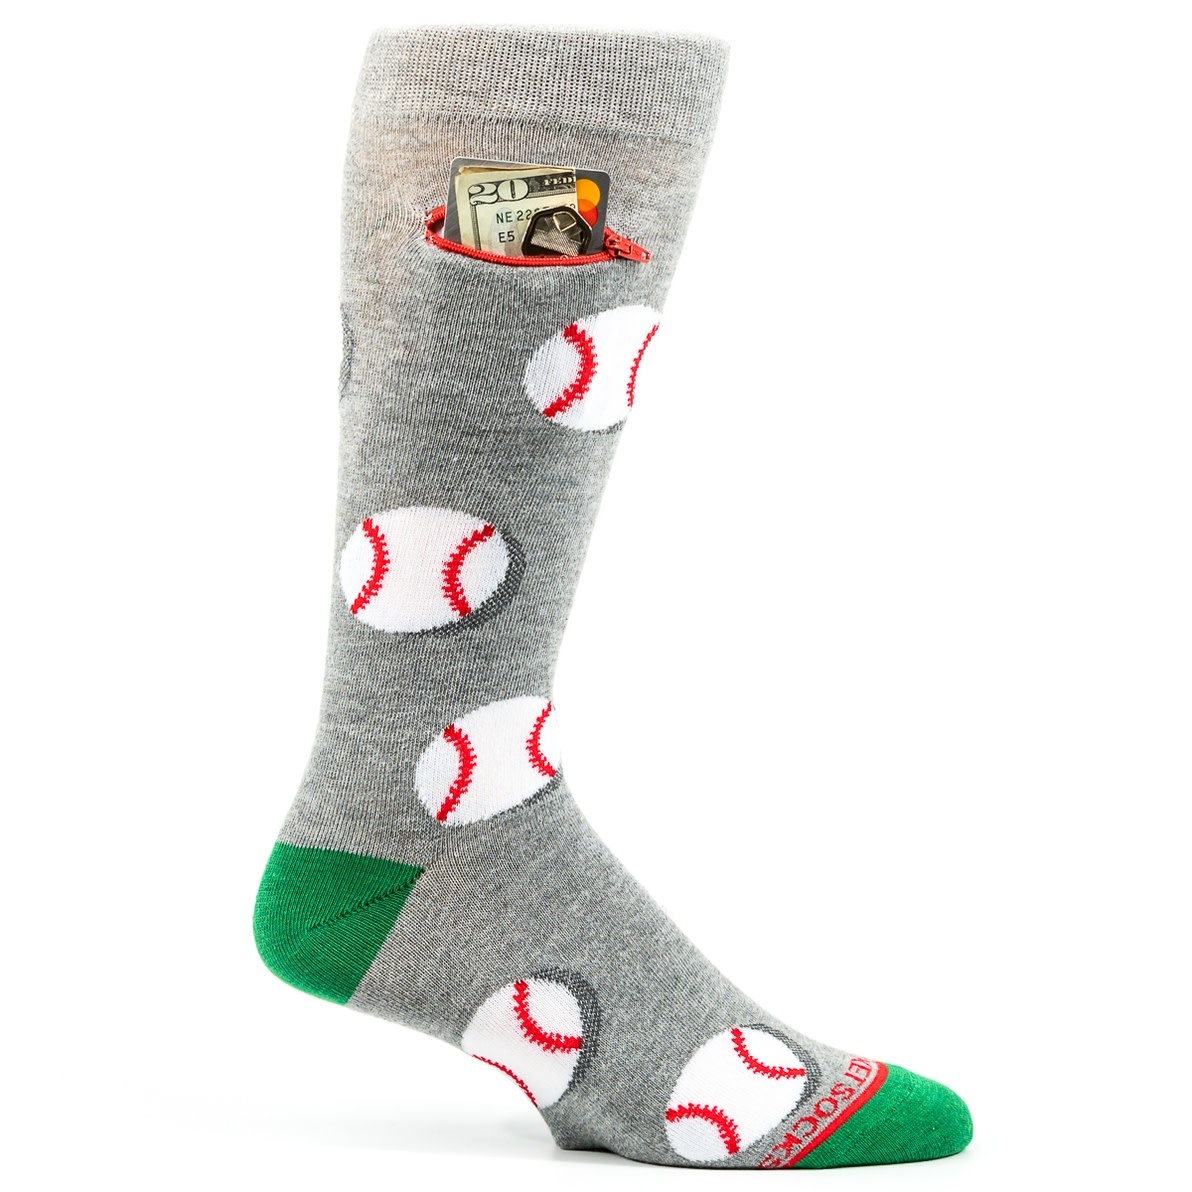 Pocket Socks Baseballs On Green Mens Pocket Socks